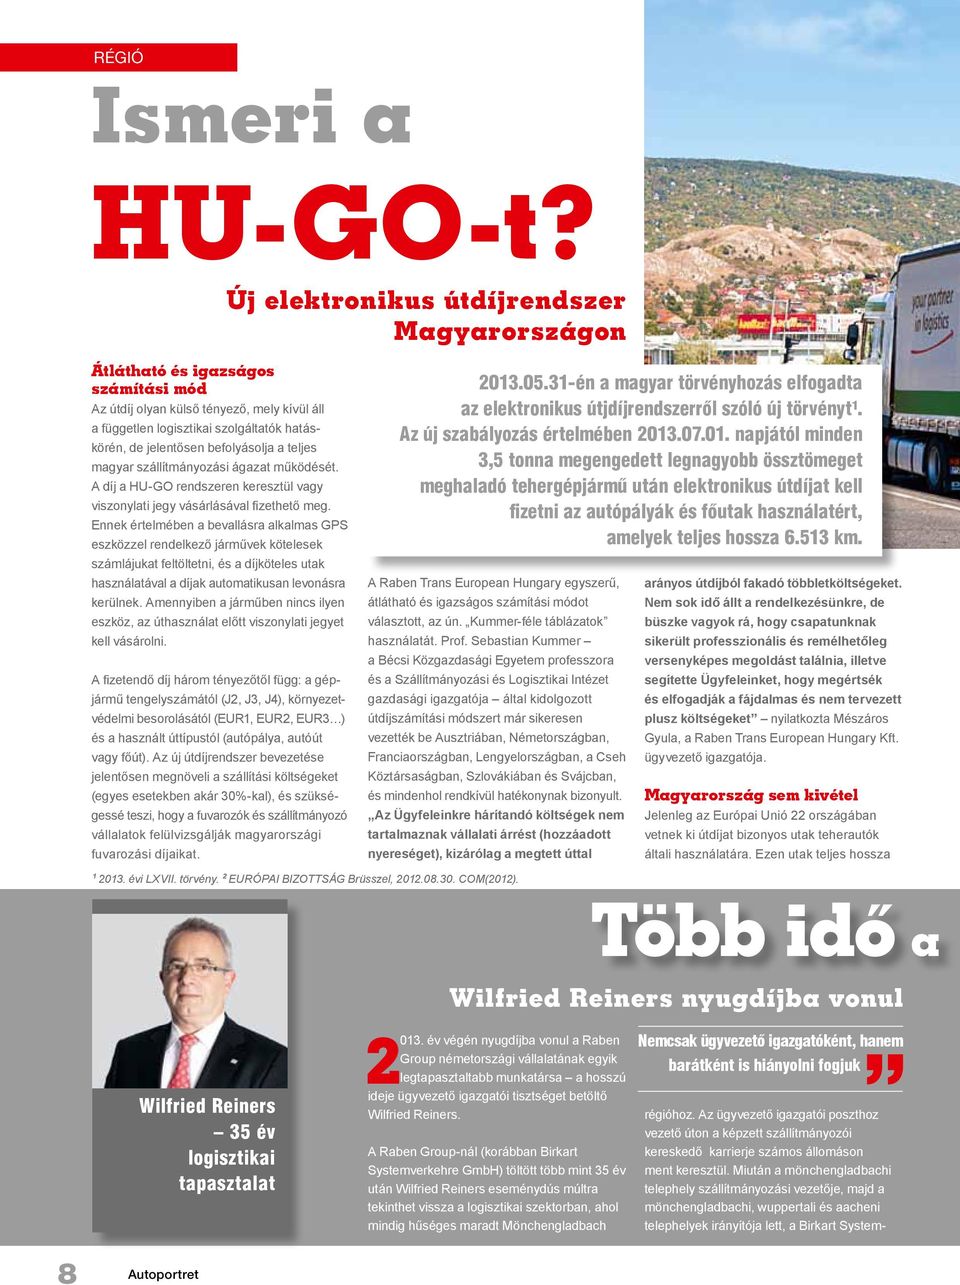 befolyásolja a teljes magyar szállítmányozási ágazat működését. A díj a HU-GO rendszeren keresztül vagy viszonylati jegy vásárlásával fizethető meg.